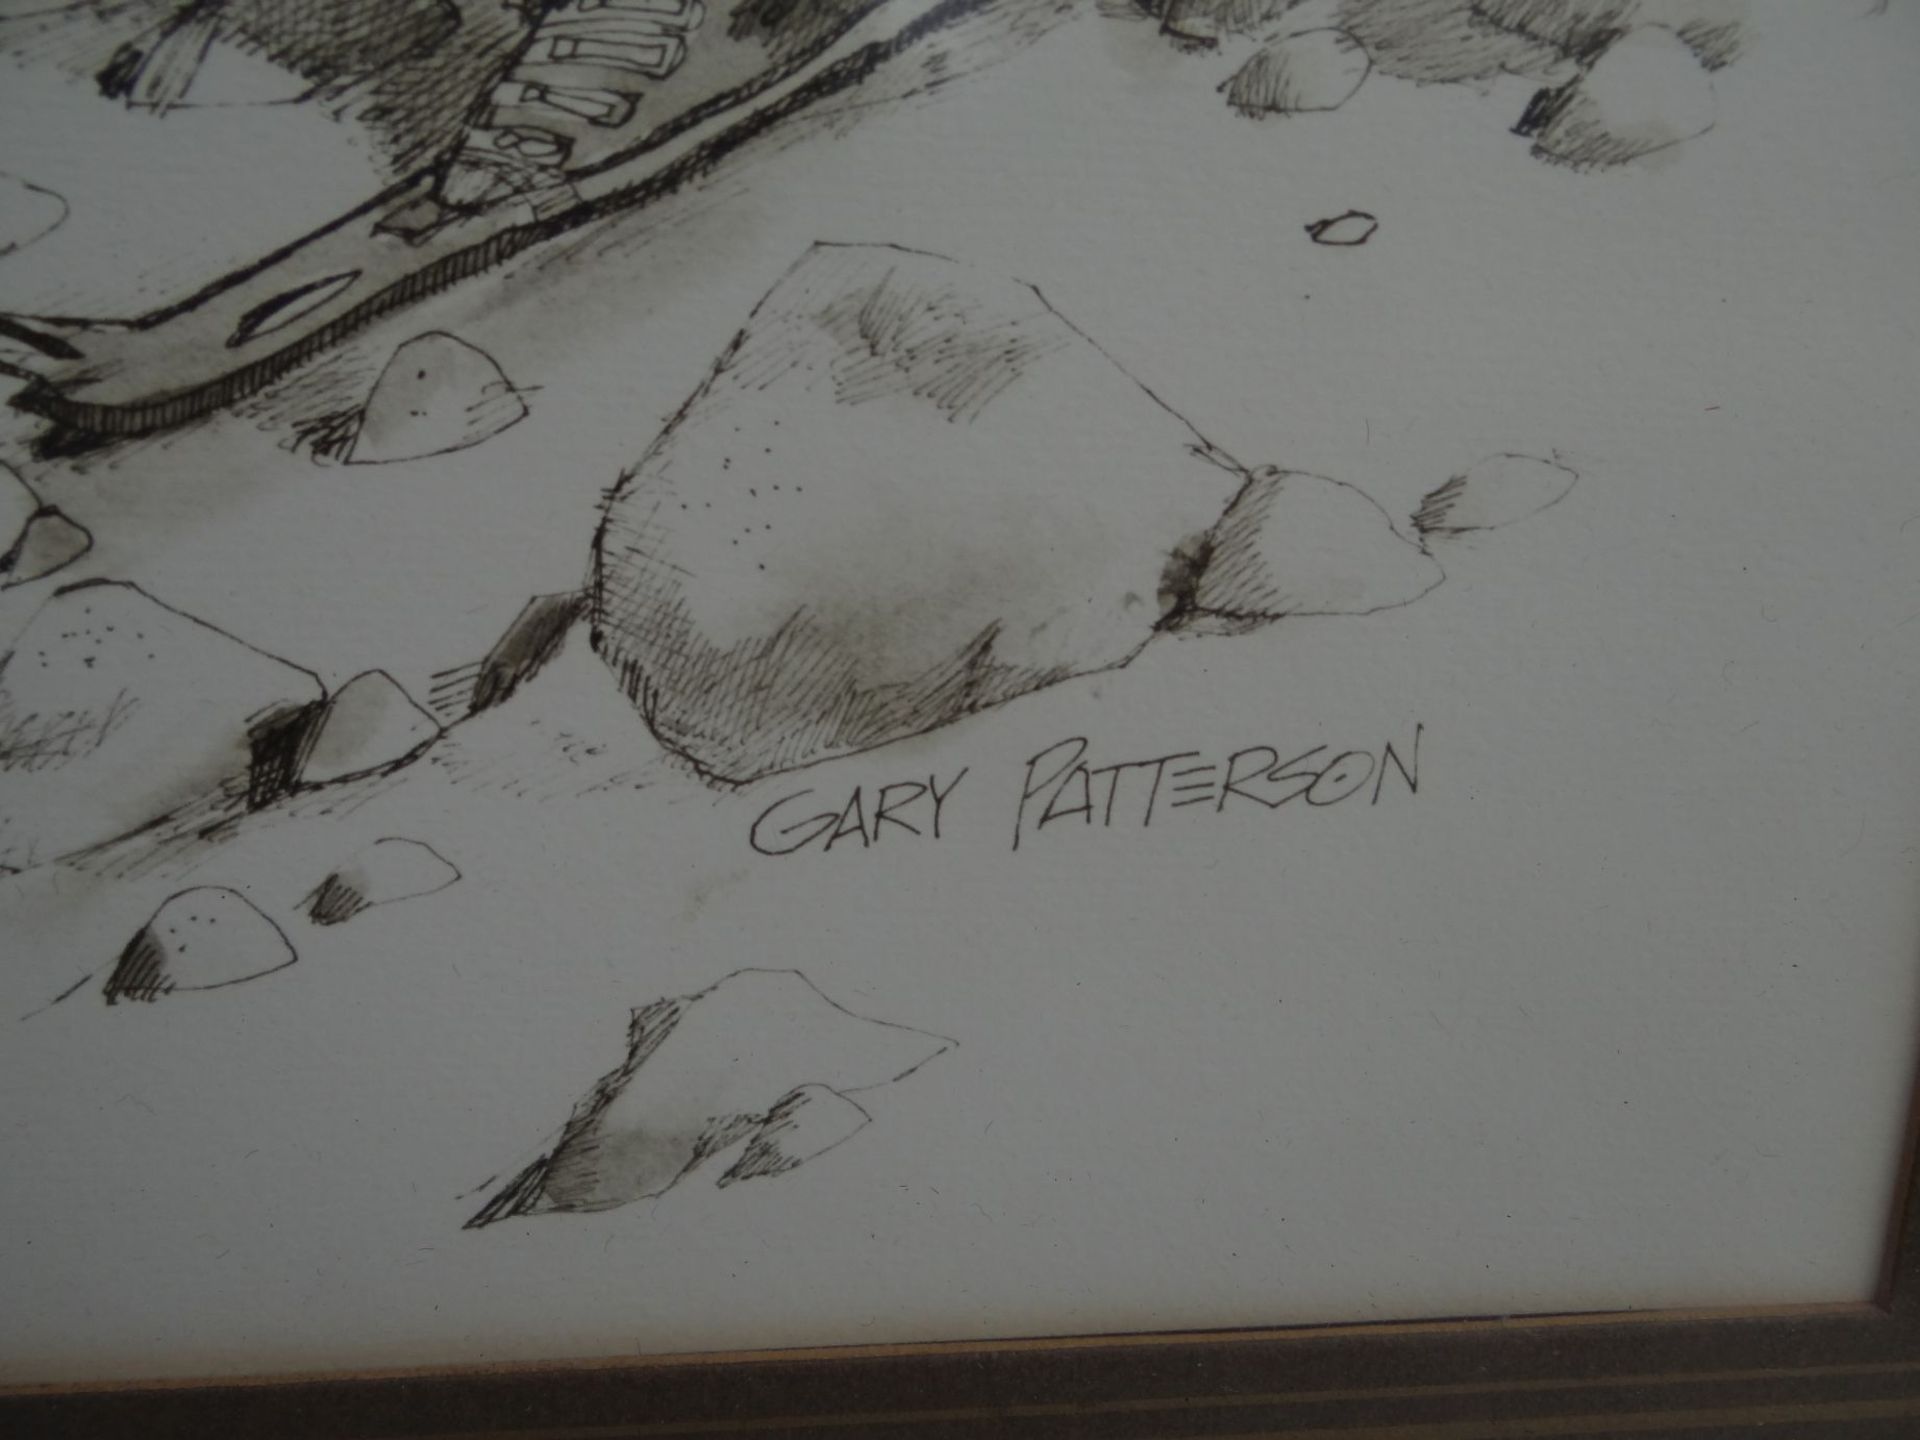 Gary Patterson "On the rocks" bezeichnete Grafik (US Cartoonist),in Druck bezeichnet, ger/Glas, RG - Bild 3 aus 4